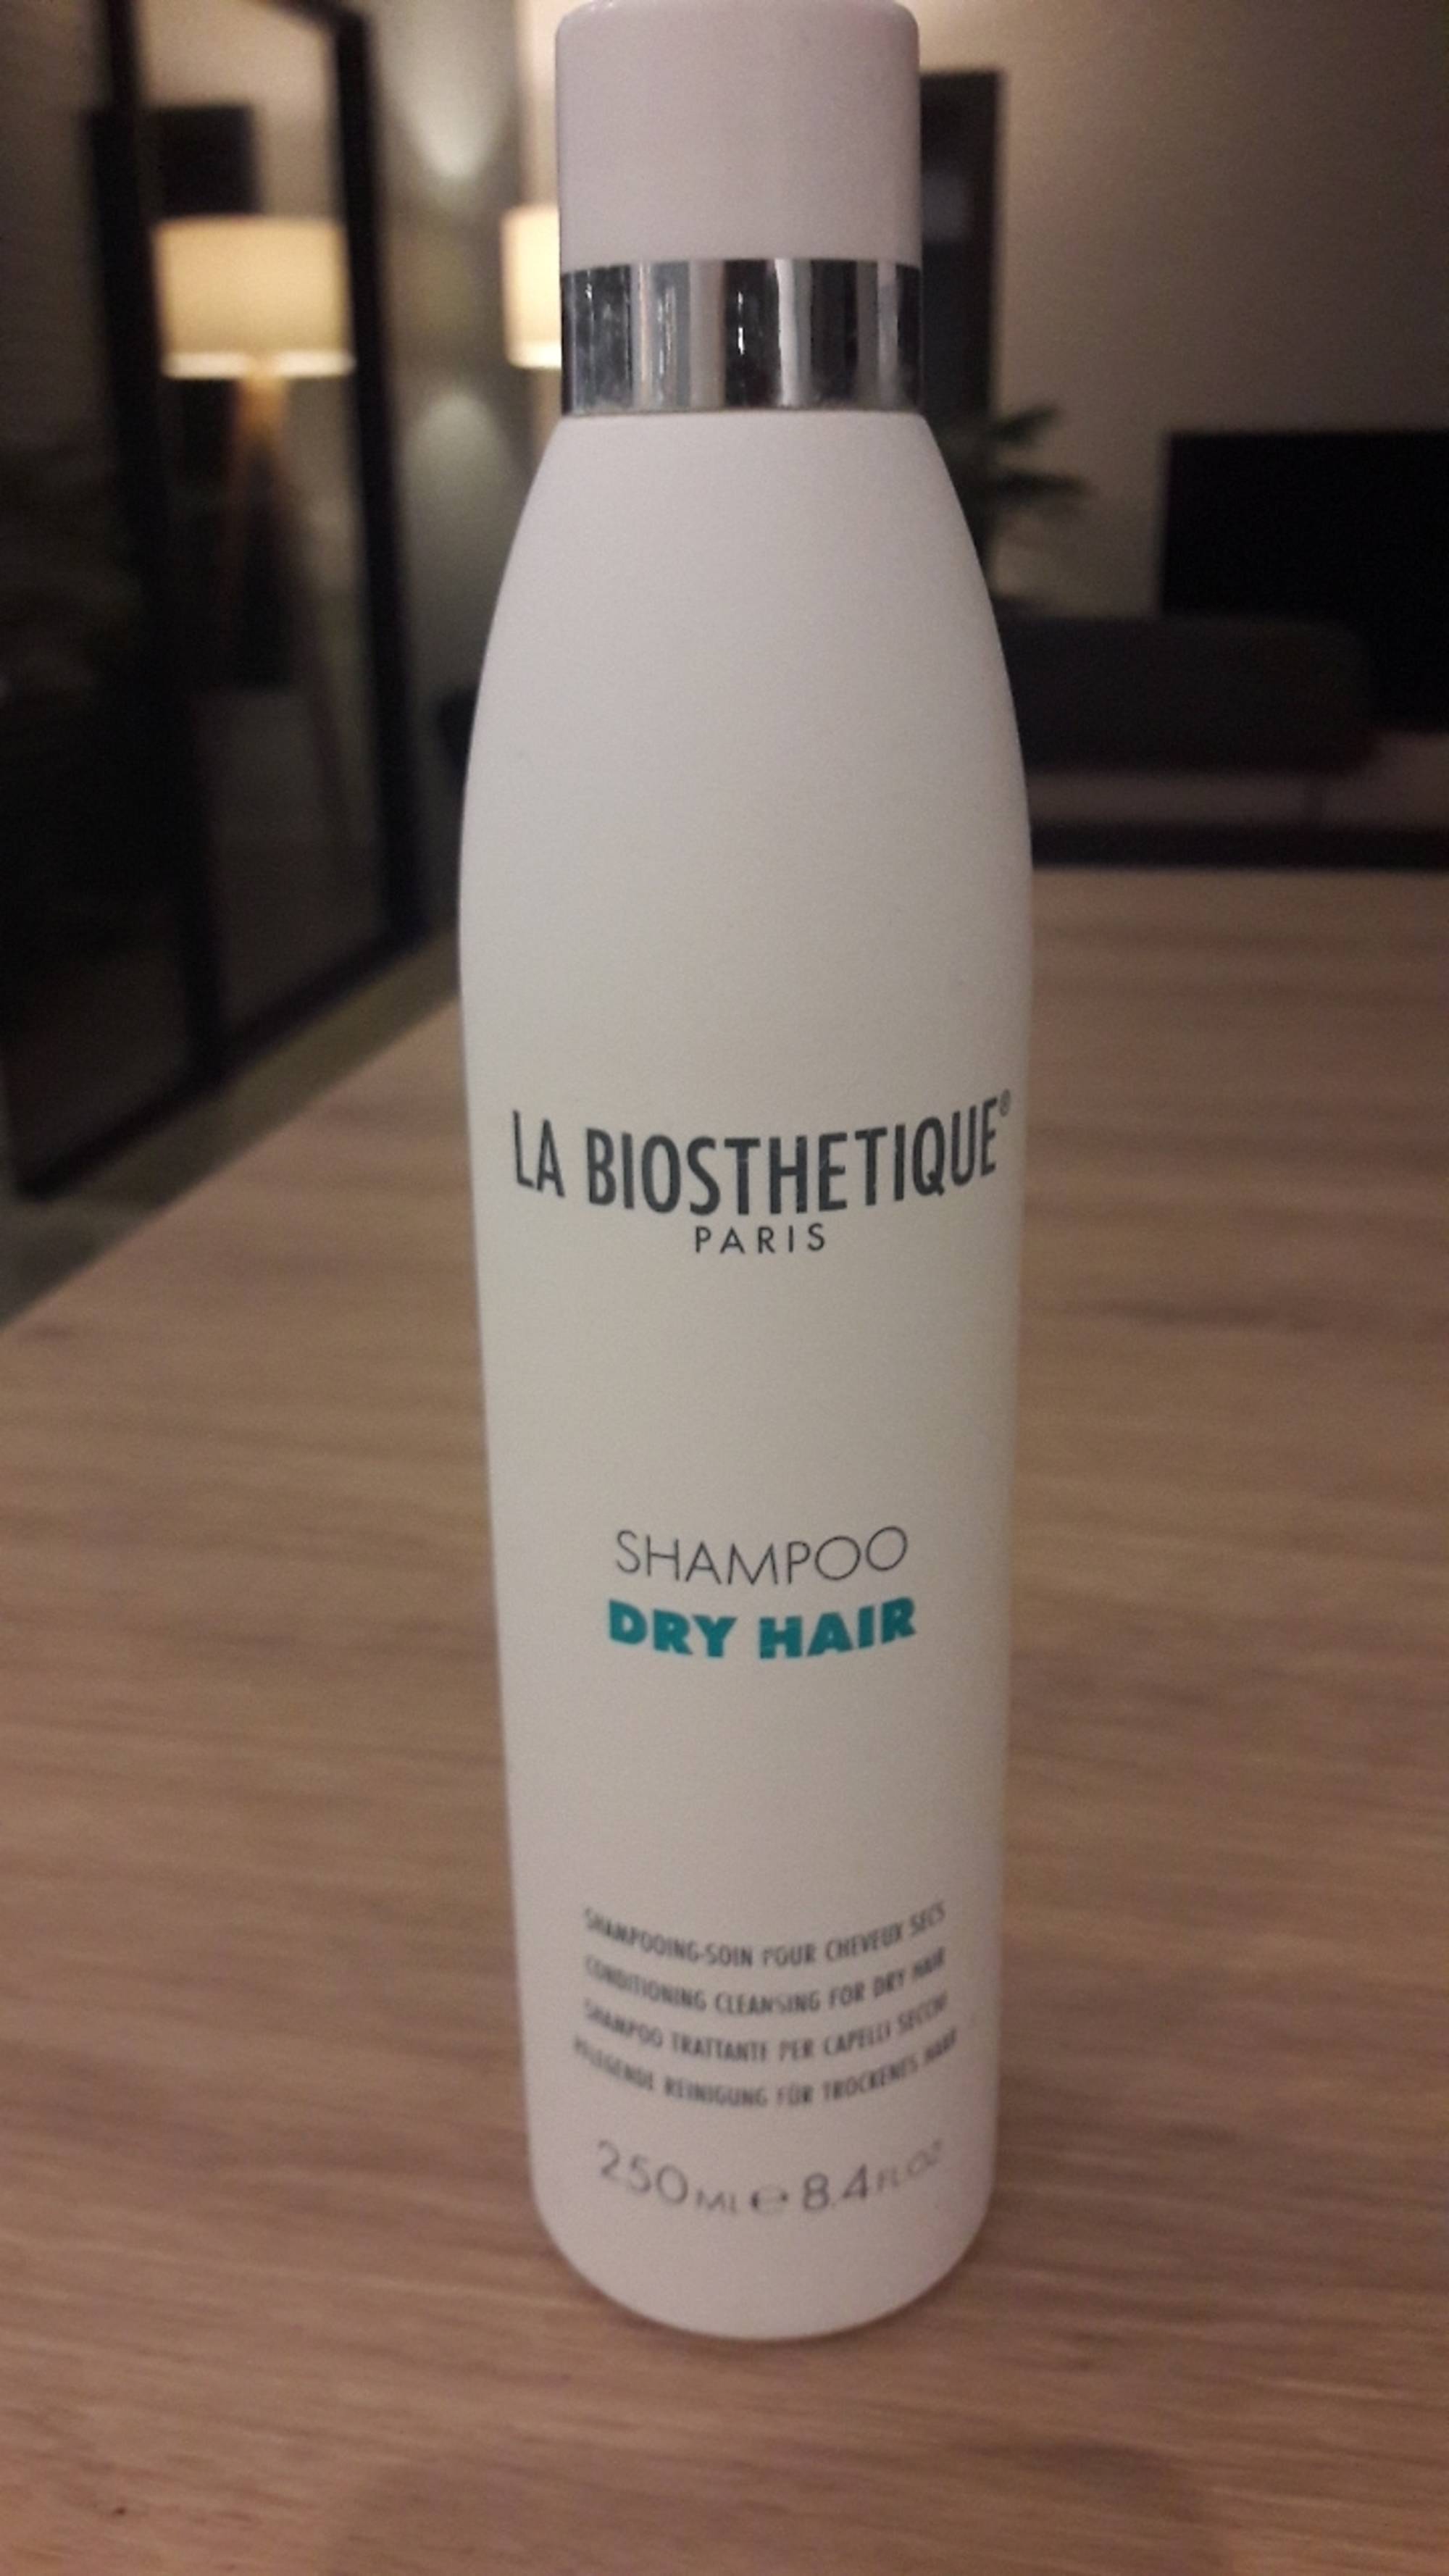 LA BIOSTHETIQUE - Shampoo dry hair - Shampooing-soin pour cheveux secs